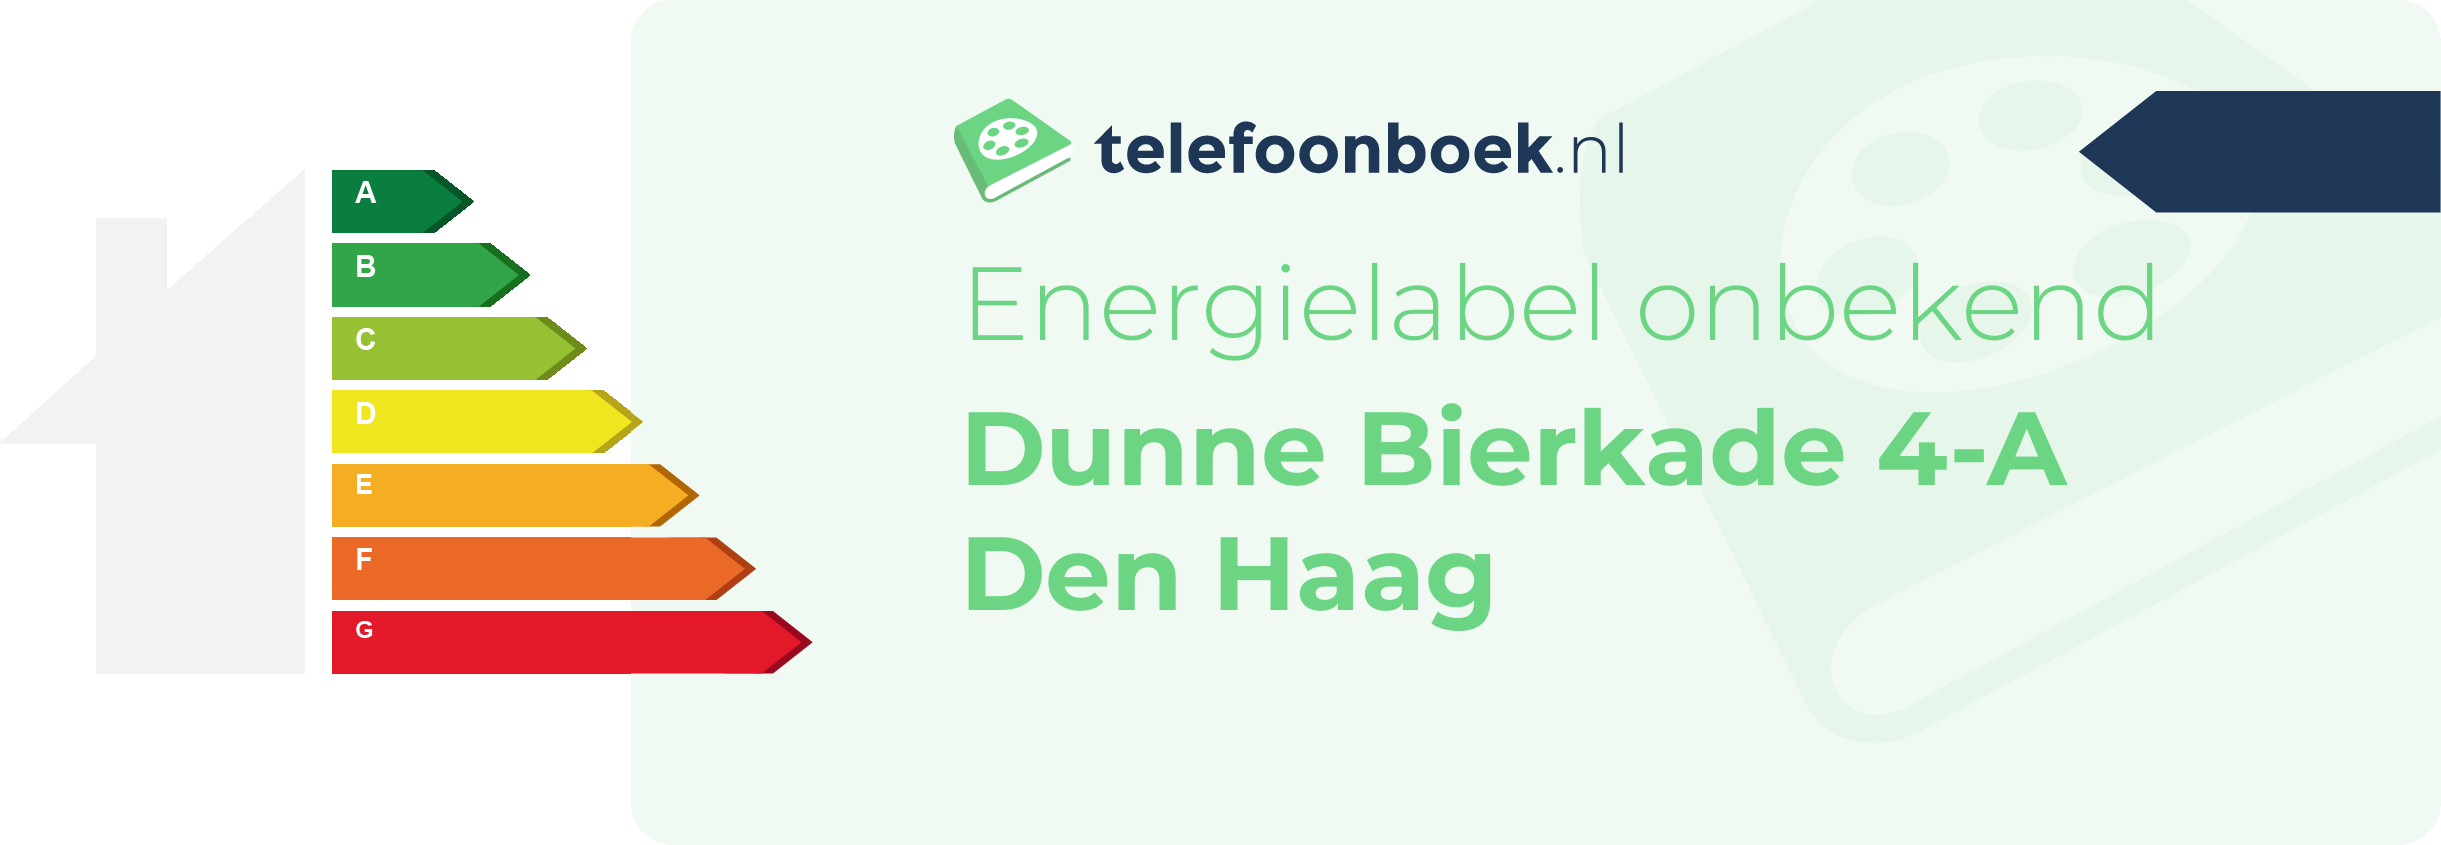 Energielabel Dunne Bierkade 4-A Den Haag